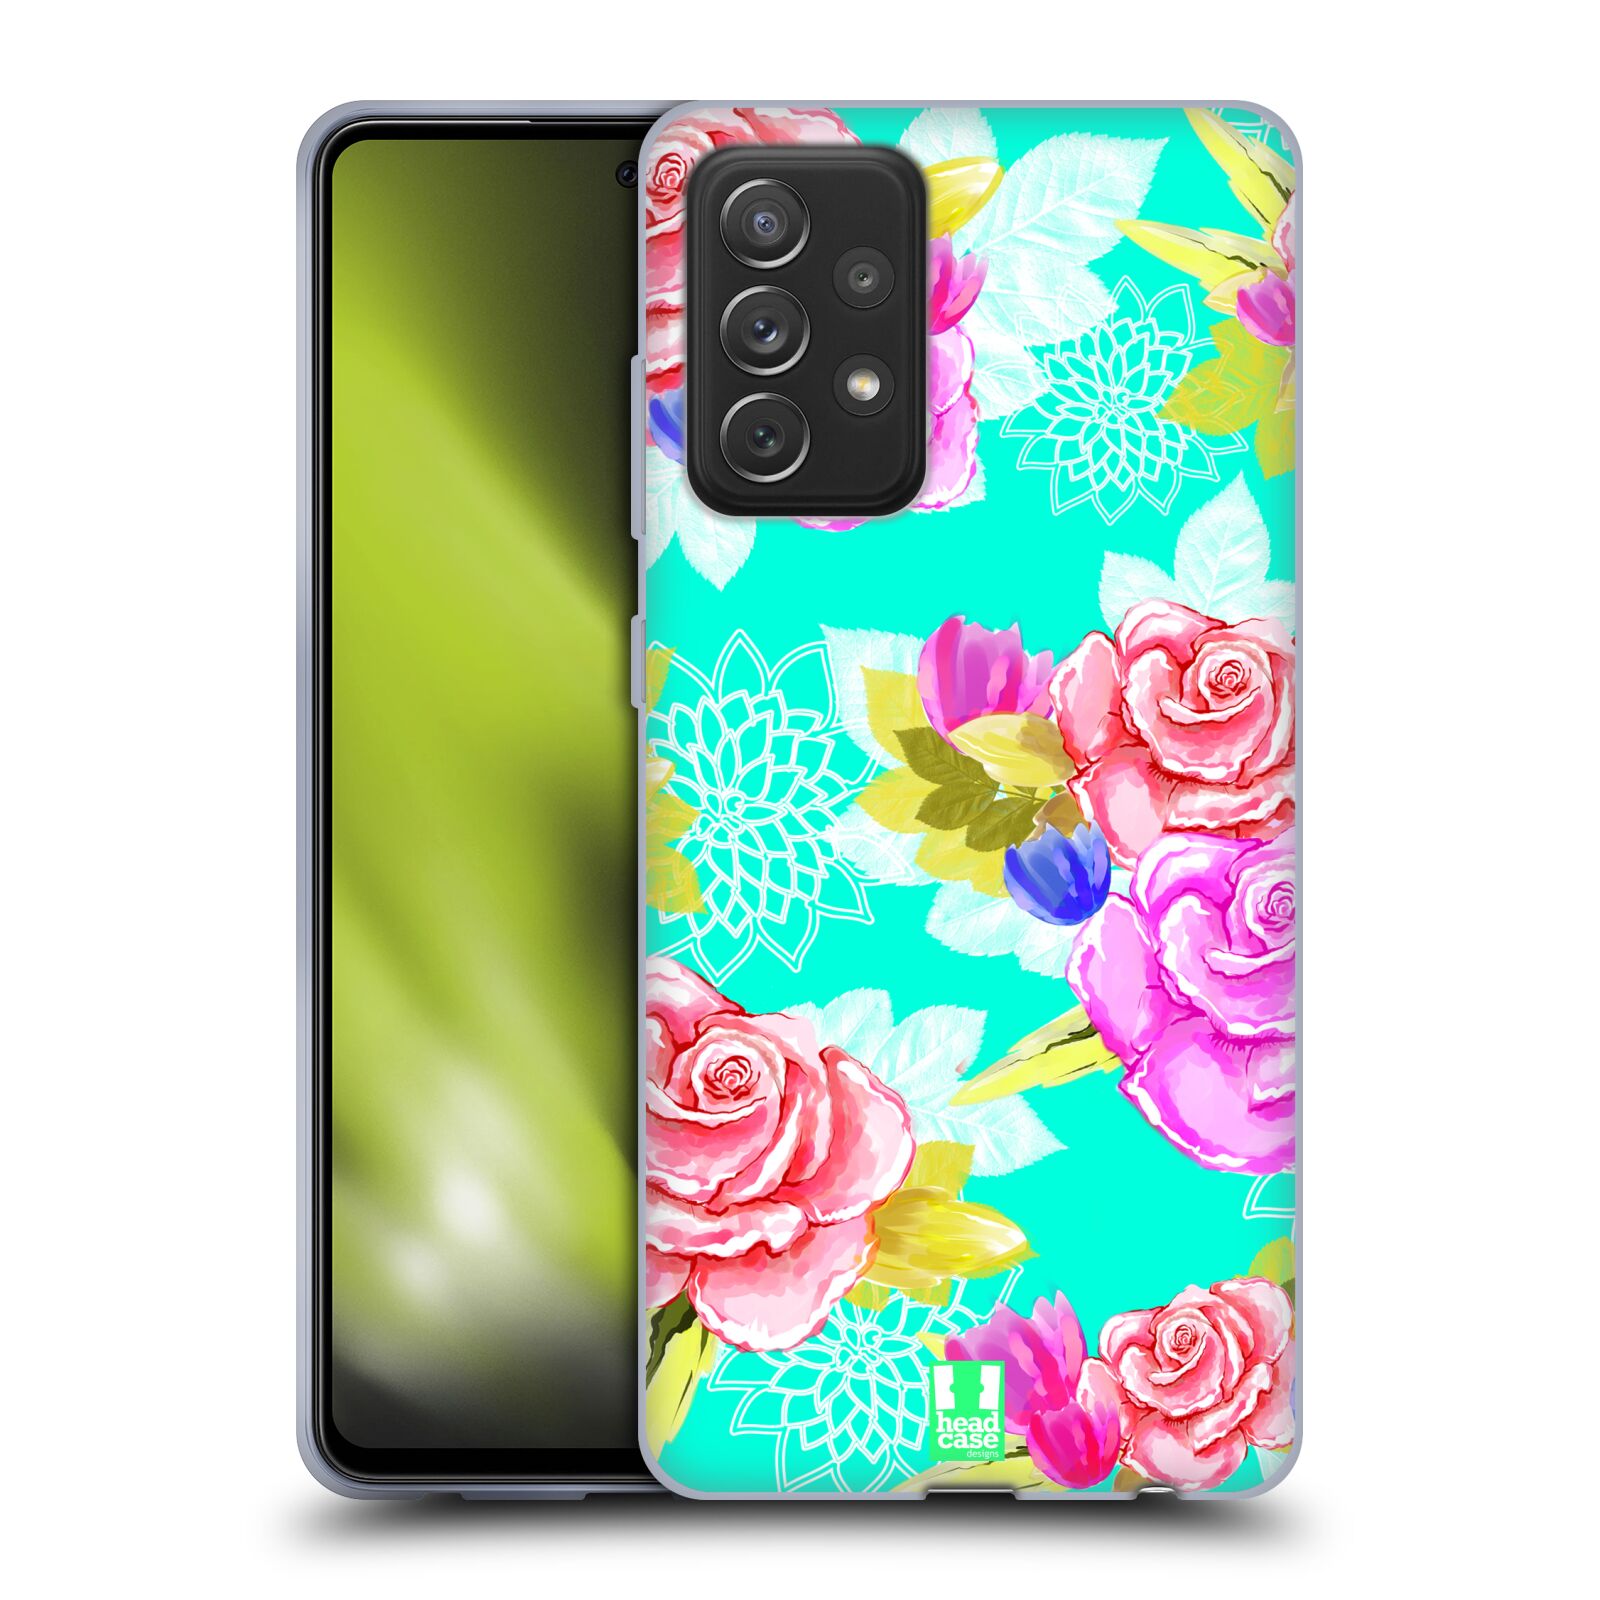 Plastový obal HEAD CASE na mobil Samsung Galaxy A72 / A72 5G vzor Malované květiny barevné AQUA MODRÁ